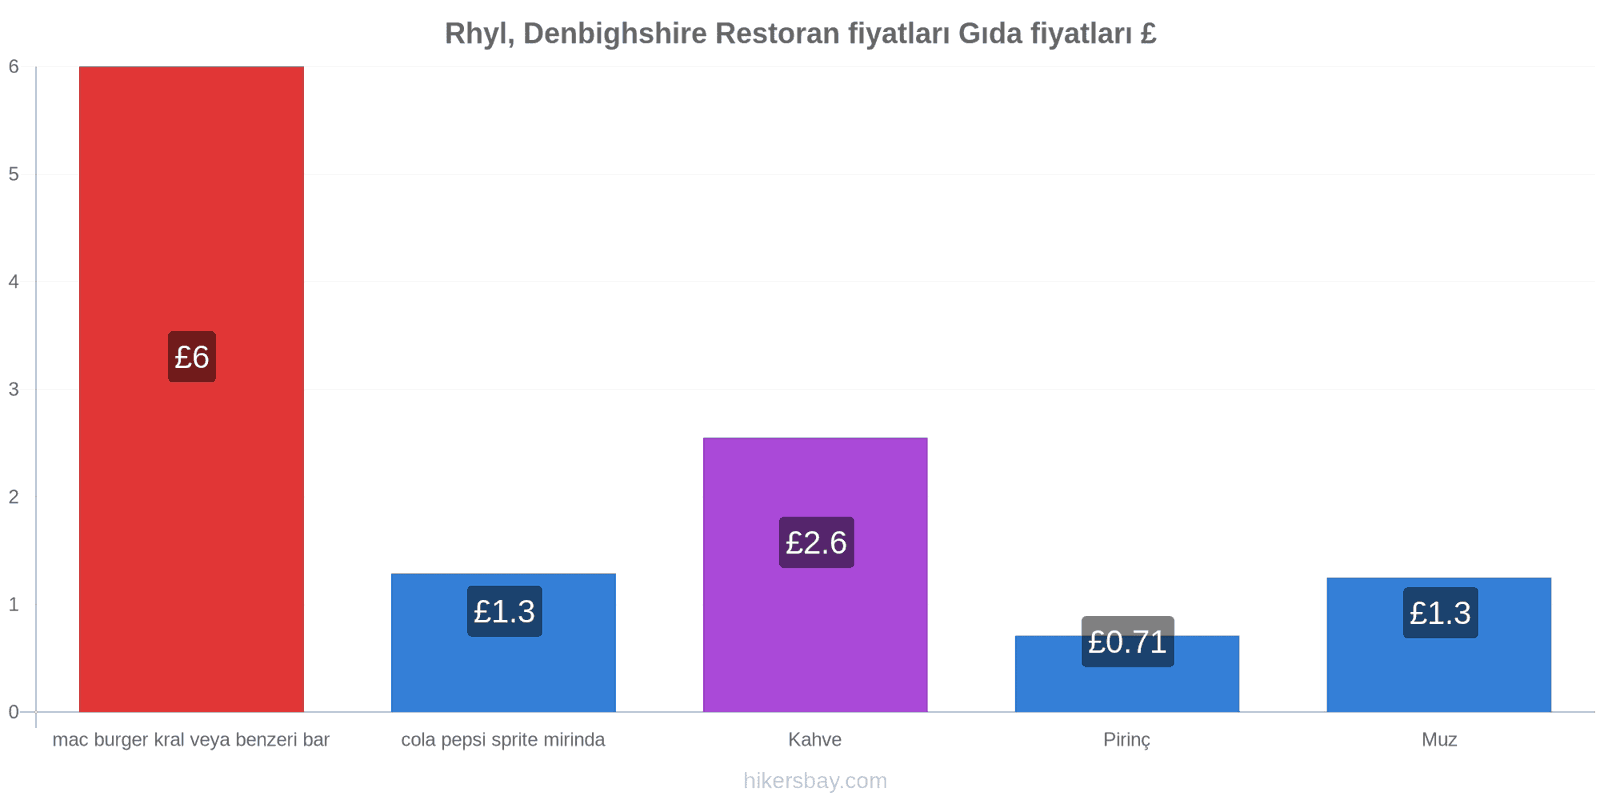 Rhyl, Denbighshire fiyat değişiklikleri hikersbay.com